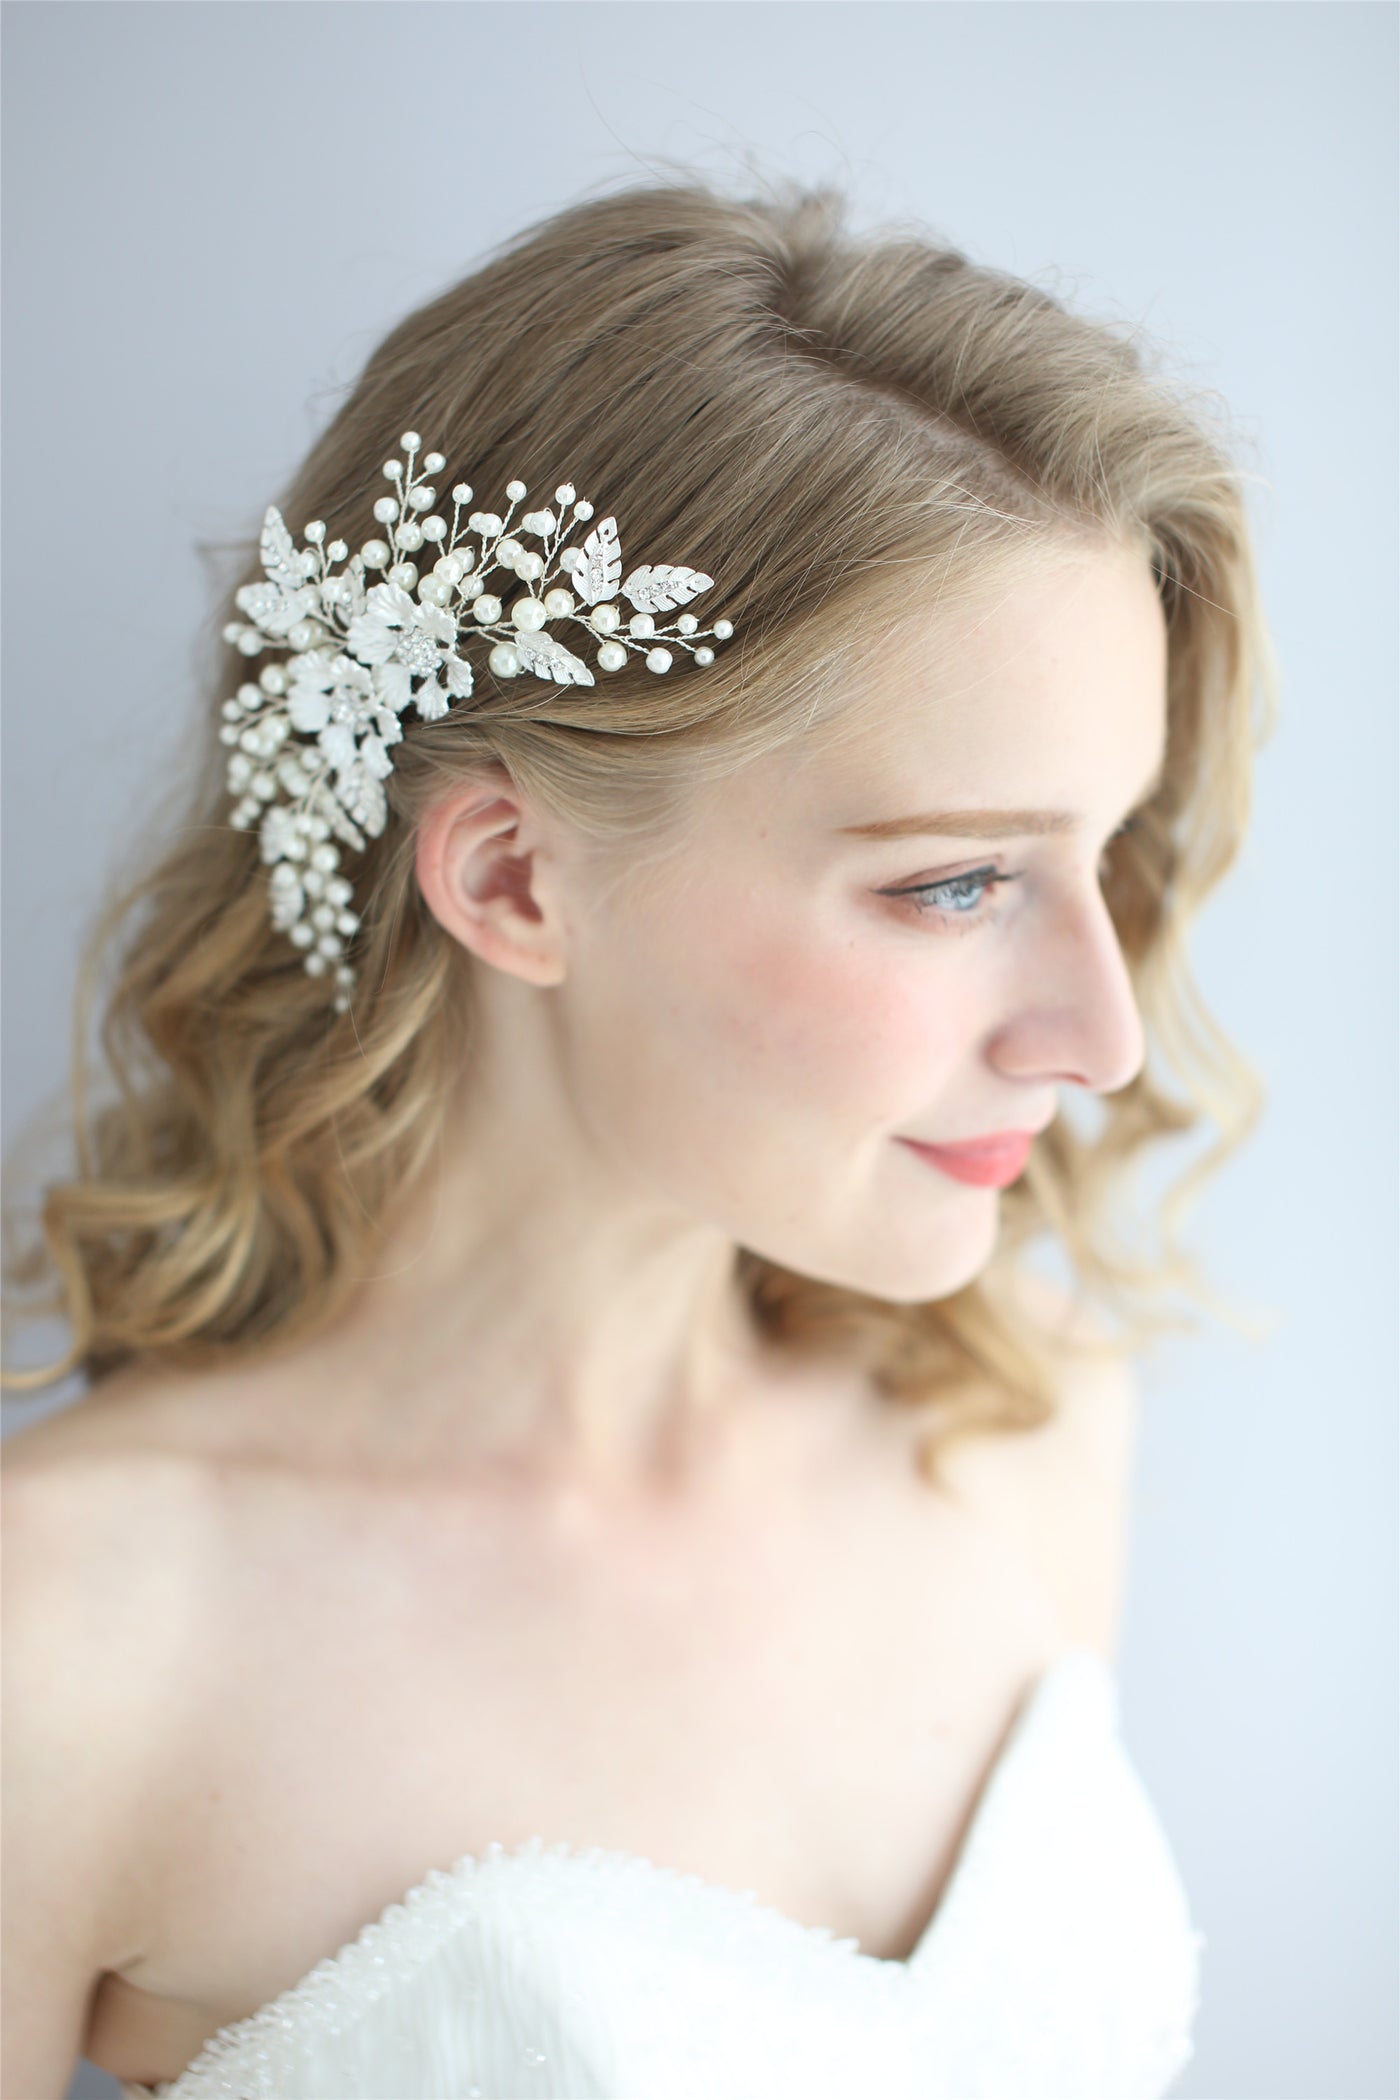 Handmade Bridal Hair Accessories - Hair Side Combs